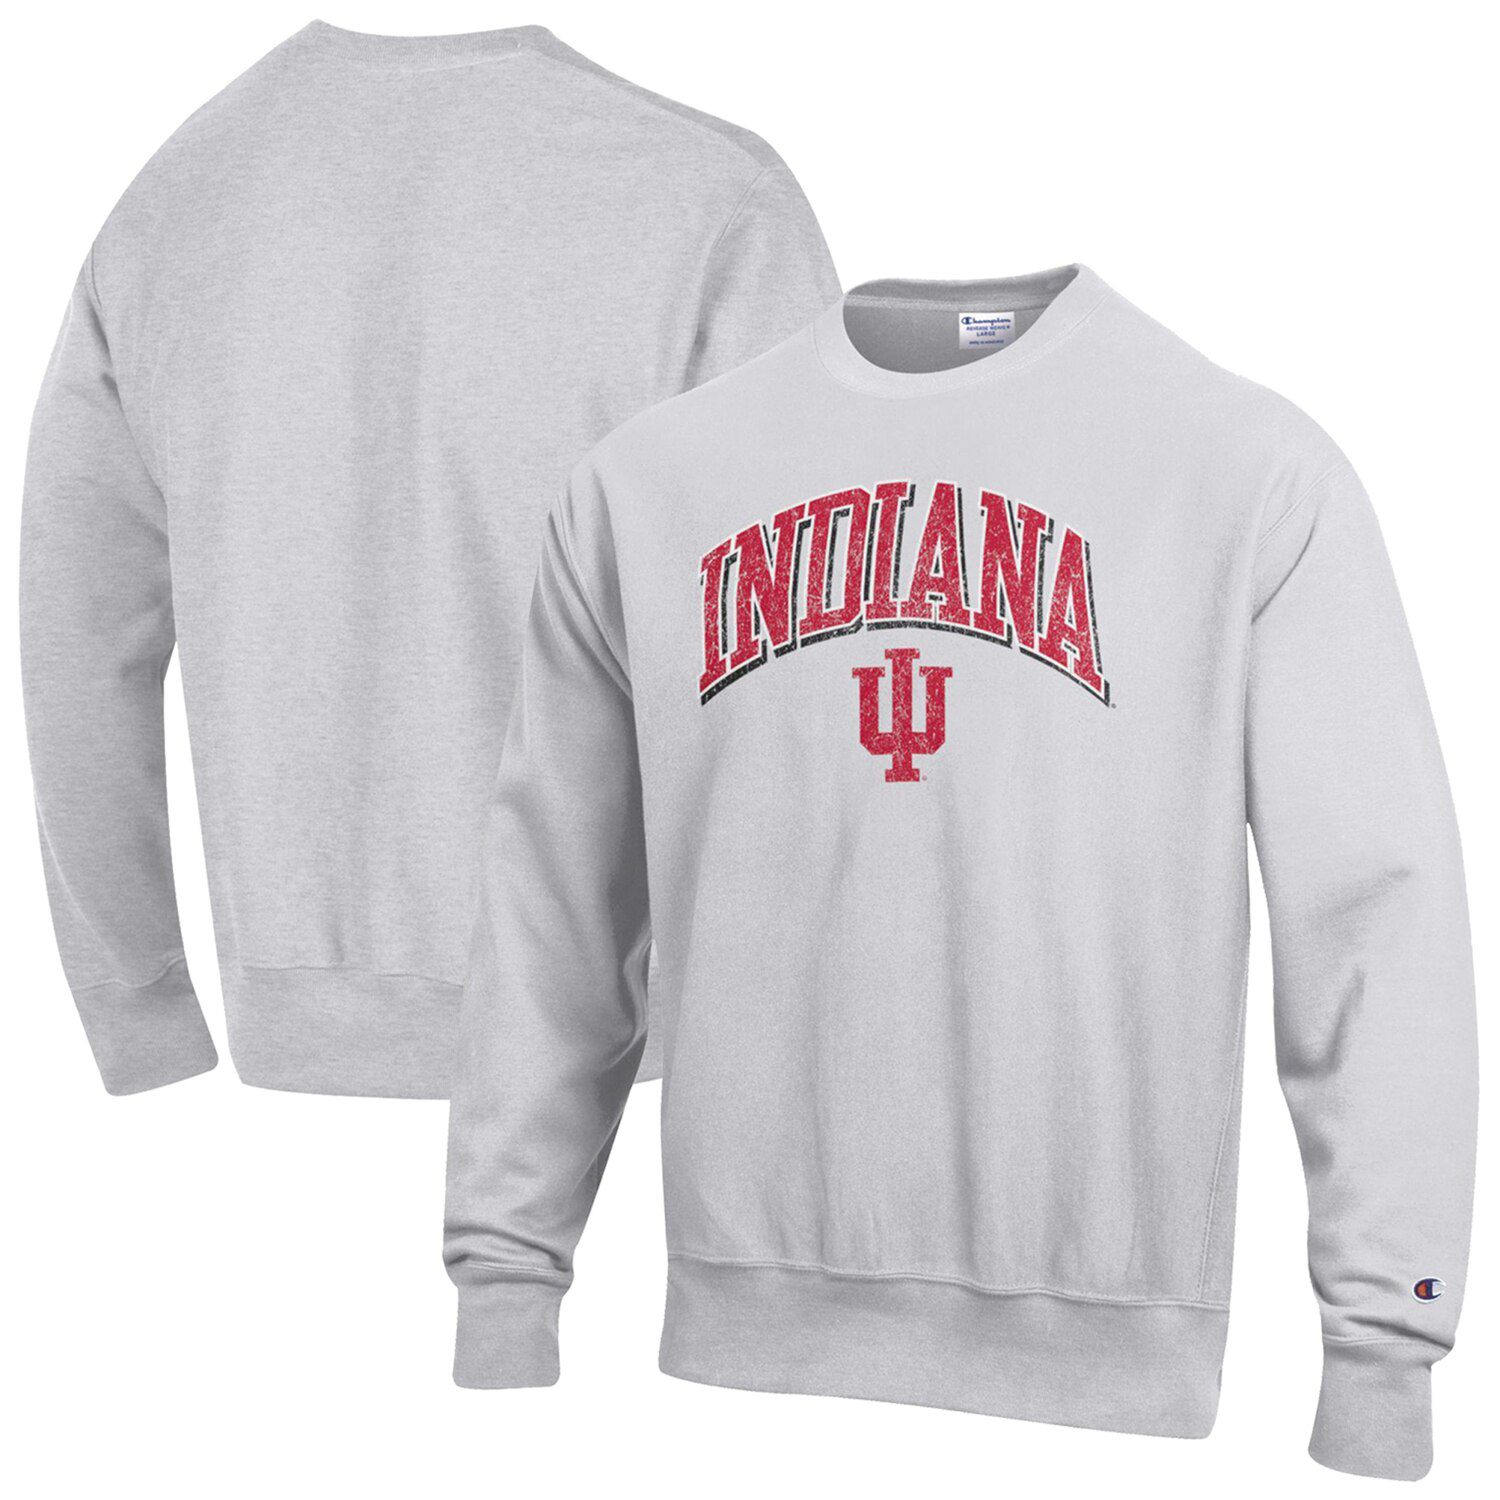 Мужской серый пуловер с логотипом Indiana Hoosiers обратного переплетения с аркой и логотипом Champion